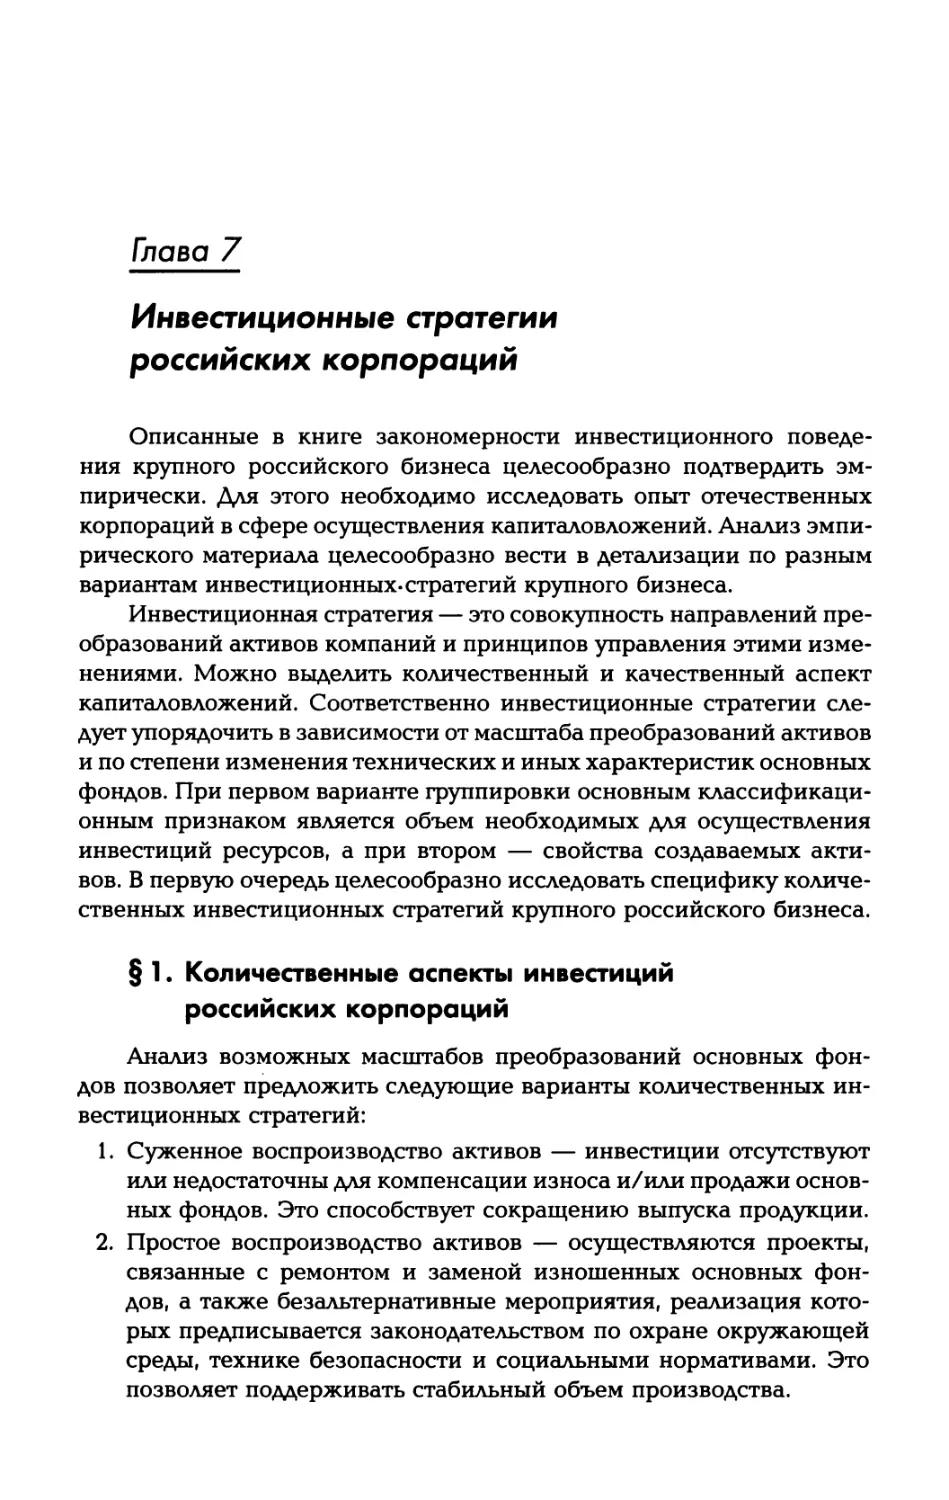 Глава 7. Инвестиционные стратегии российских корпораций
§ 1. Количественные аспекты инвестиций российских корпораций